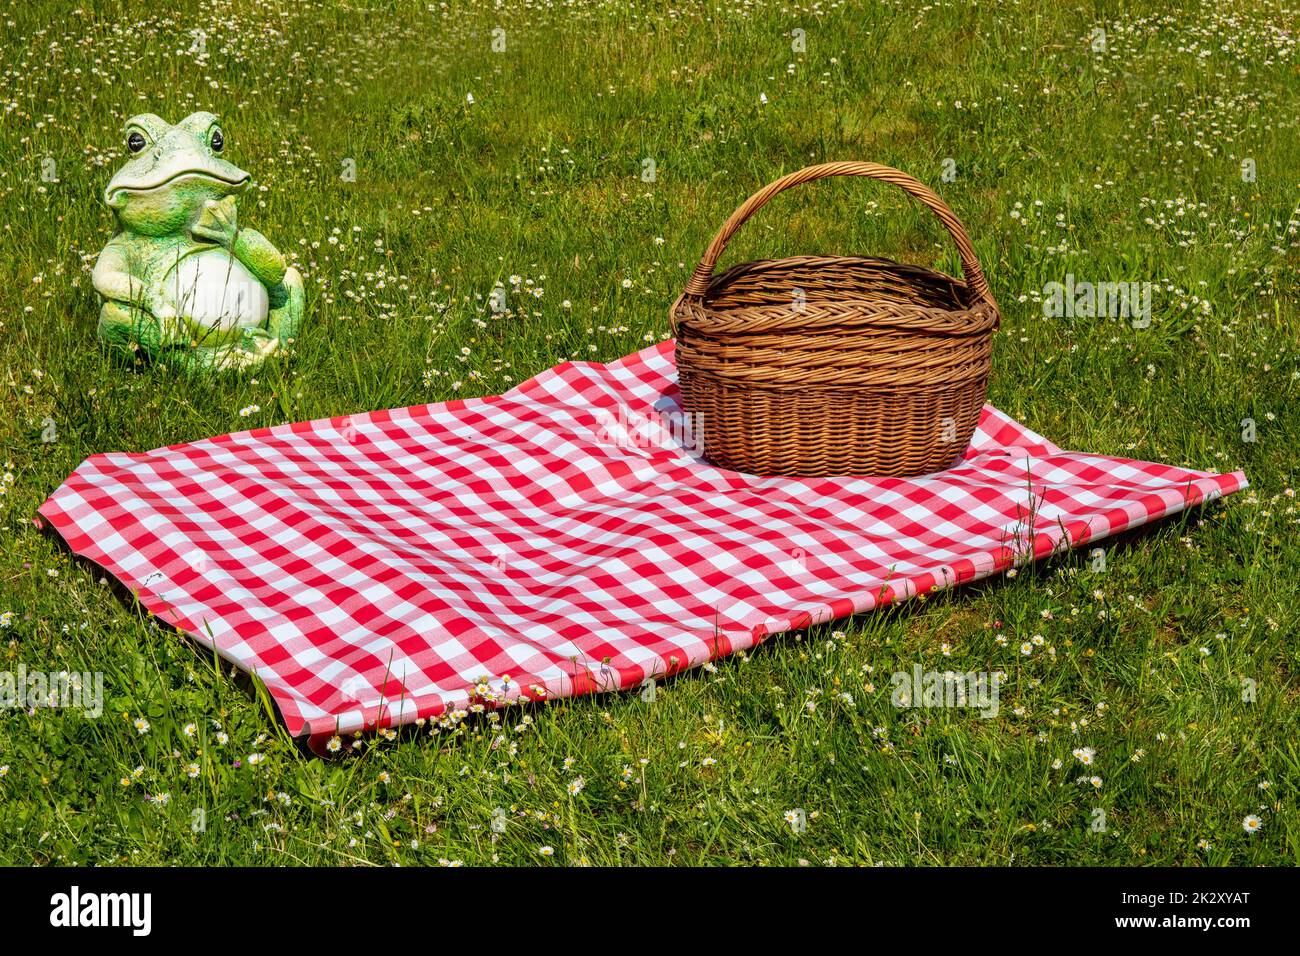 Rote karierte Picknickdecke mit leerem Korb auf einer Wiese mit blühenden Gänseblümchen. Schöner Hintergrund für die Produktplatzierung oder -Montage. Frosch im Hintergrund. Stockfoto